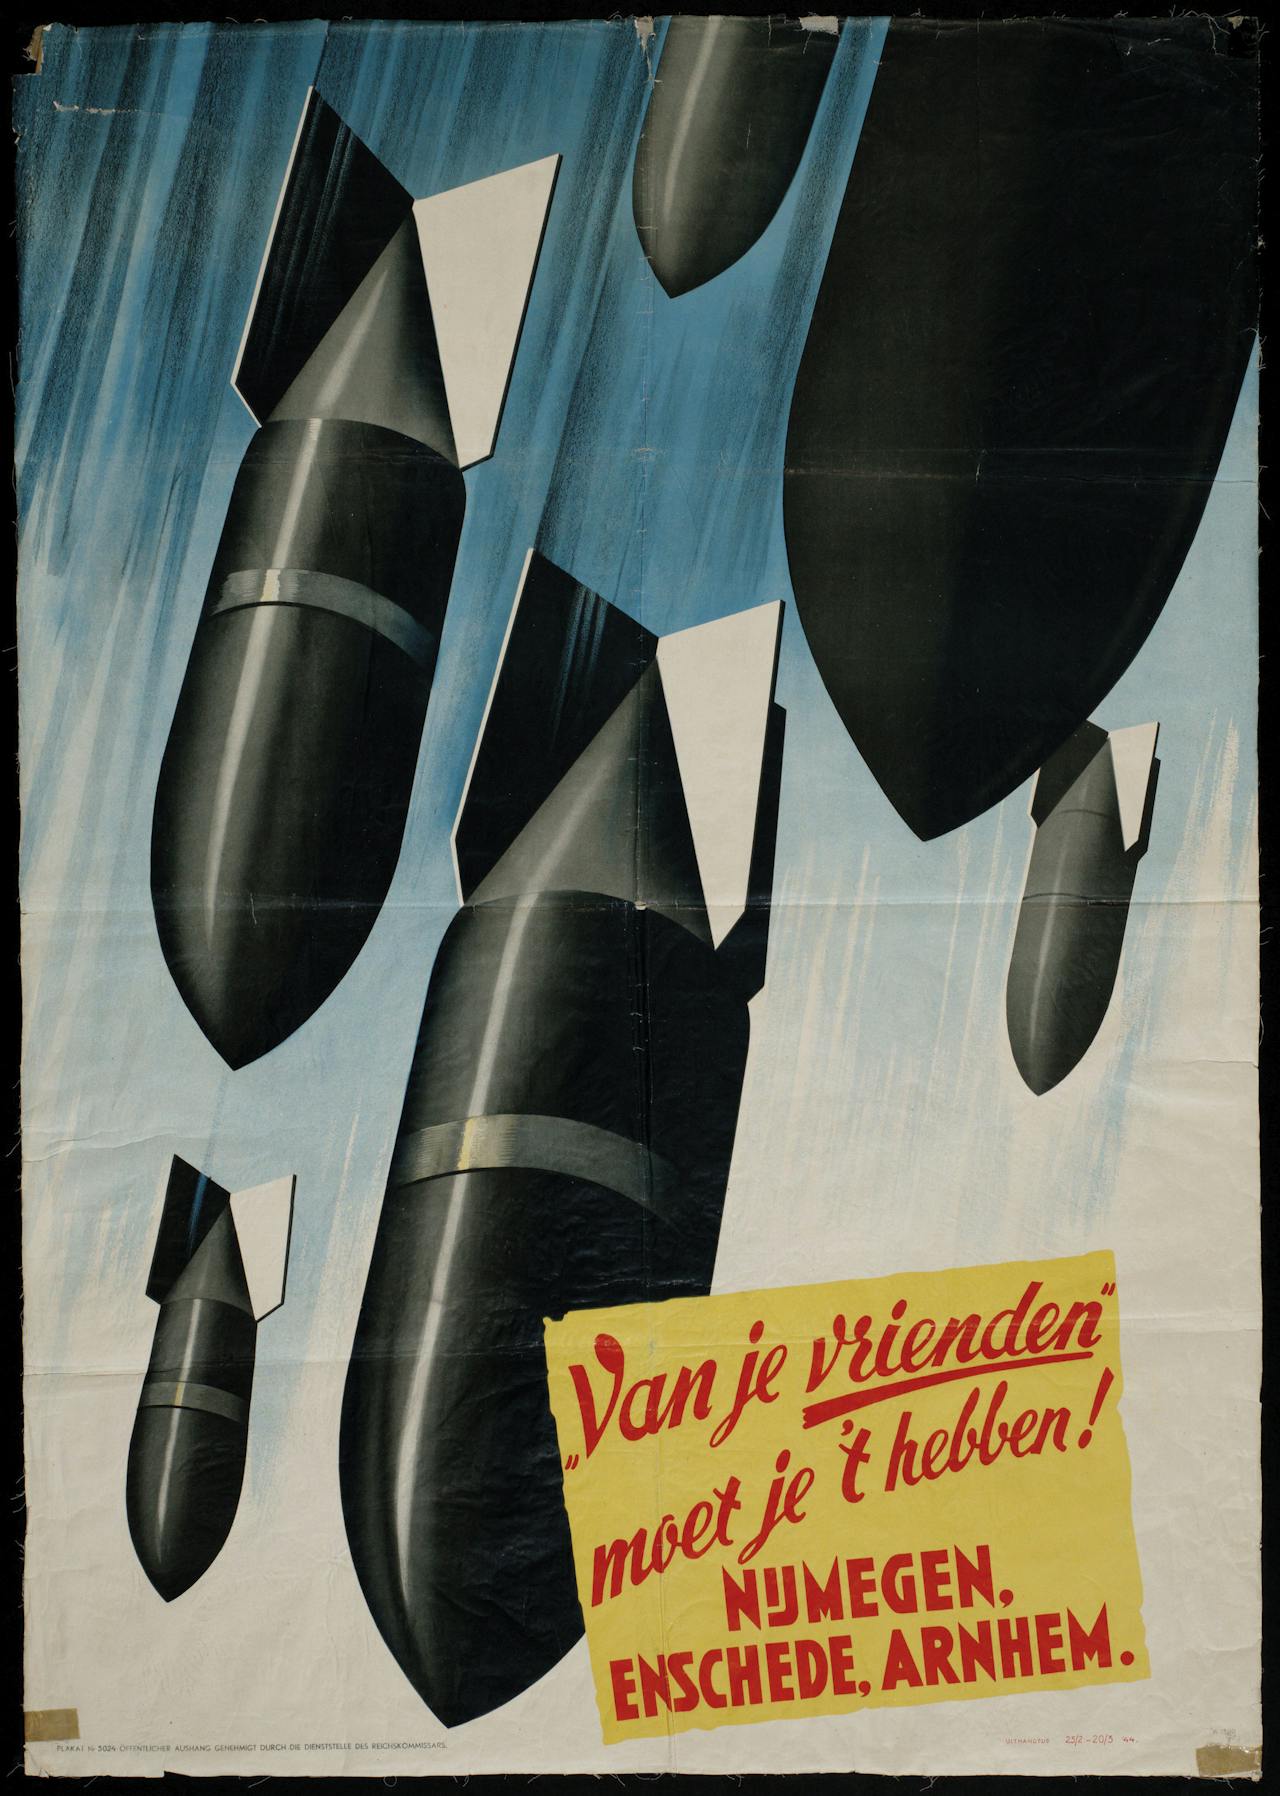 Een poster met bommen die in de lucht vliegen. Op de poster staat een tekst: van je vrienden moet je 't hebben. Nijmegen, Enschede, Arnhem.